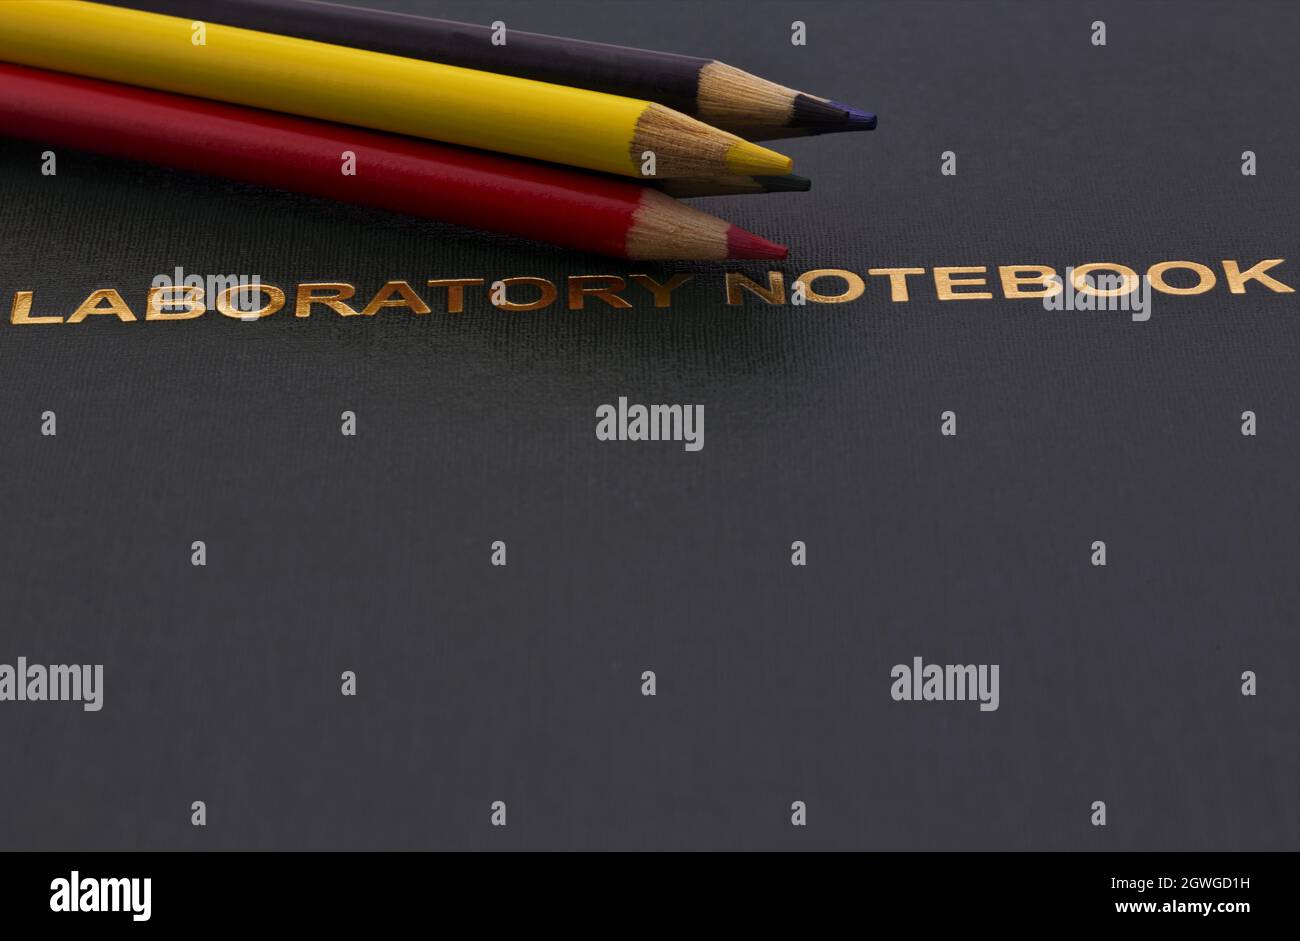 Les crayons de couleur placés sur un carnet de laboratoire scientifique foncé et doré reflètent l'importance accordée à l'université, à la recherche et à l'éducation à la notatio Banque D'Images